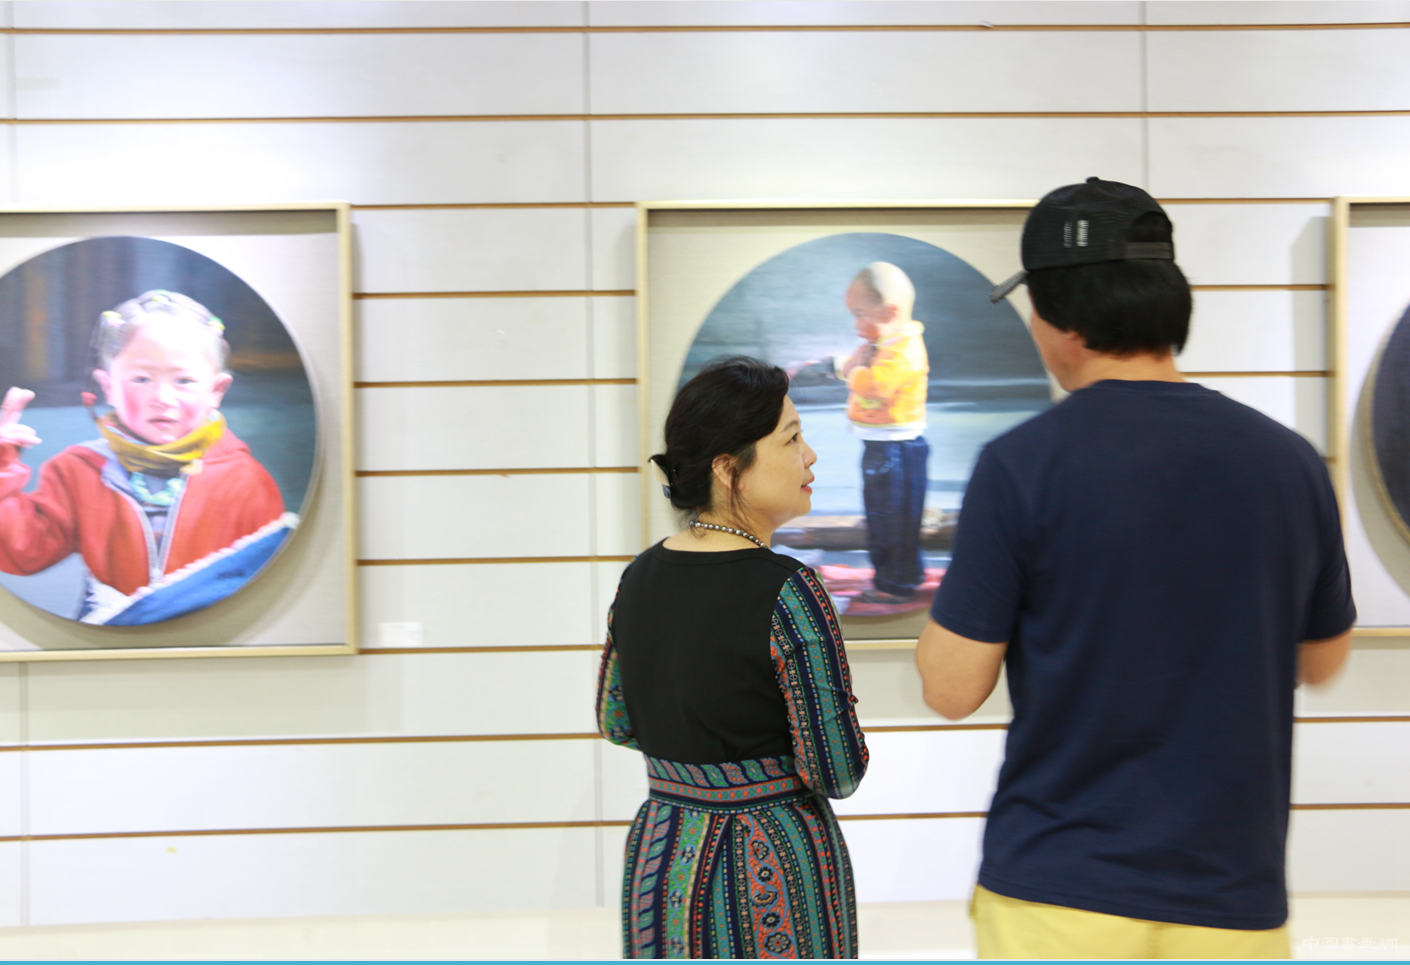 “让艺术融入生活”油画展在西城区文化中心展出